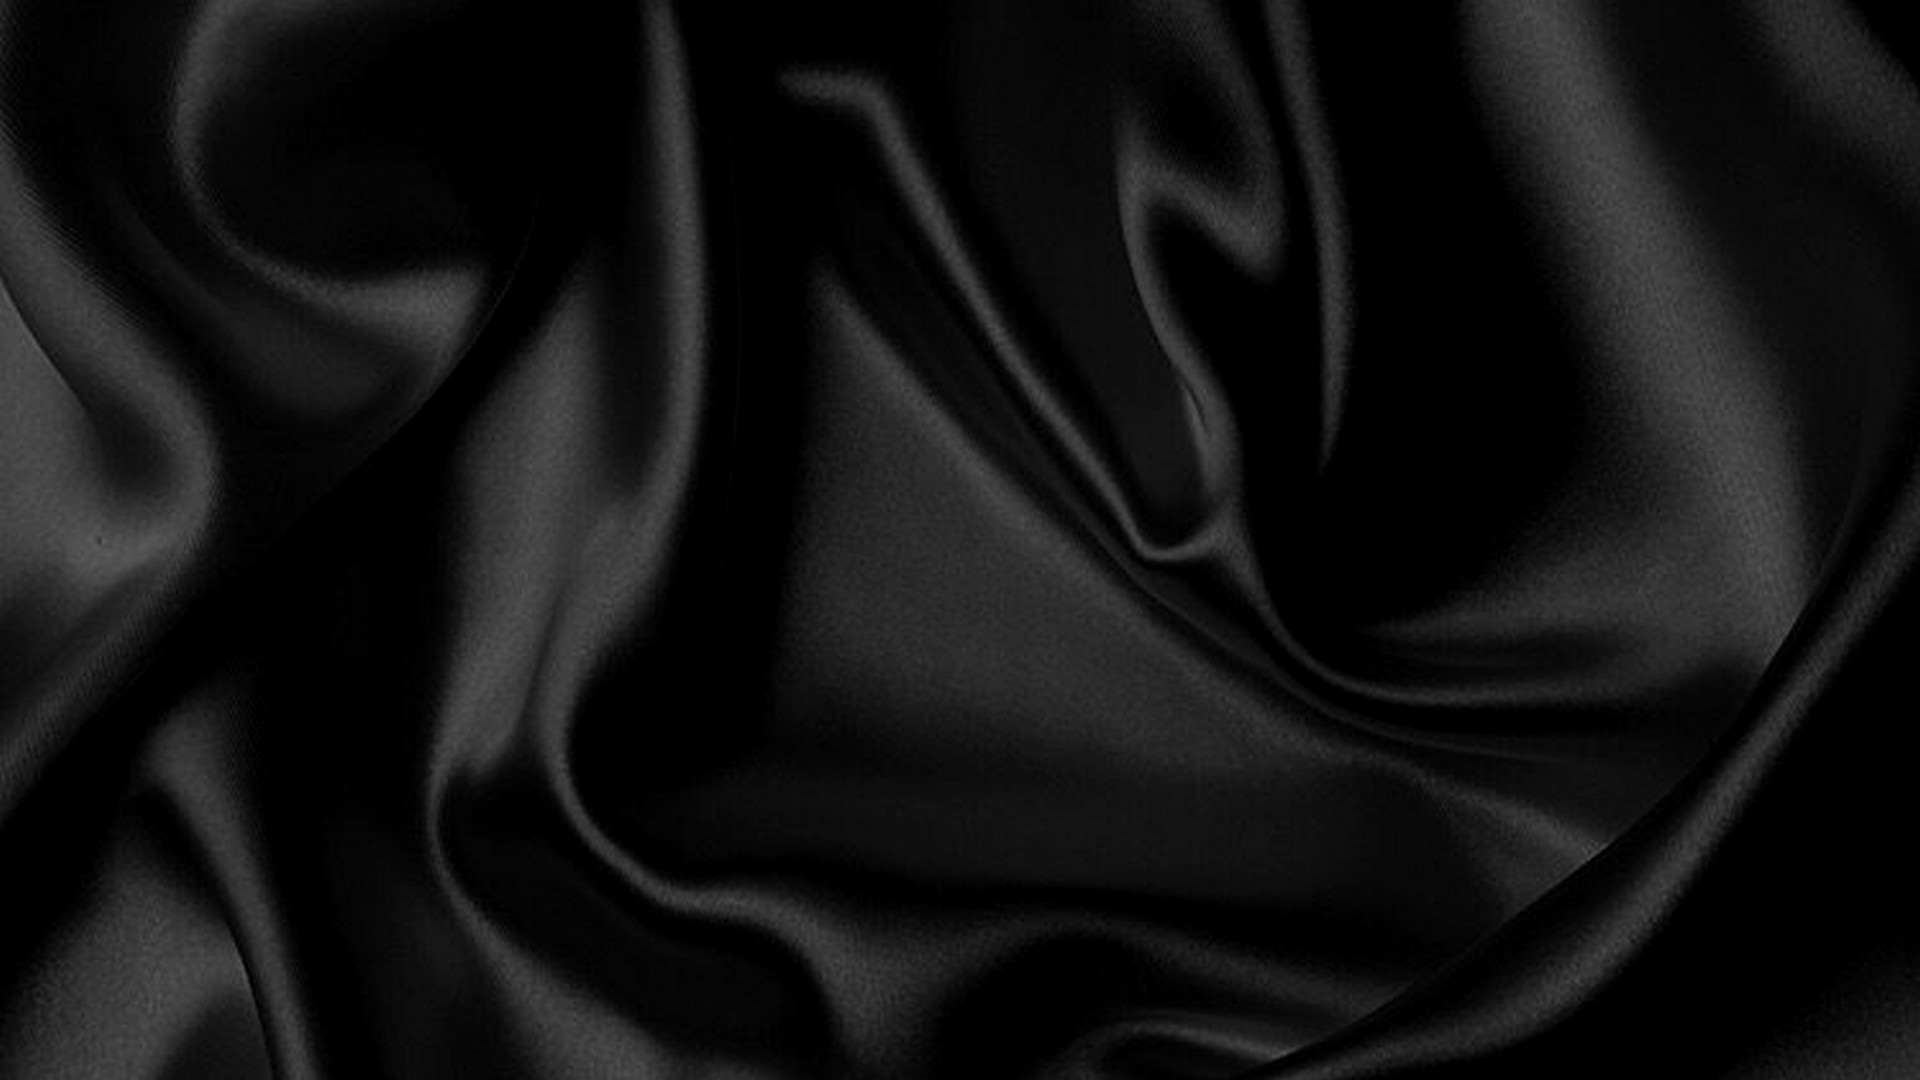 Đánh thức phong cách của bạn với hình nền vải taffeta đen. Quả không sai khi nói rằng nó thể hiện sự quý phái và đẳng cấp. Nét đặc biệt chỉ có trong loại vải này khiến cho bạn cảm thấy tự tin và đầy quyến rũ. Chắc chắn, ảnh sẽ khiến bạn say đắm.